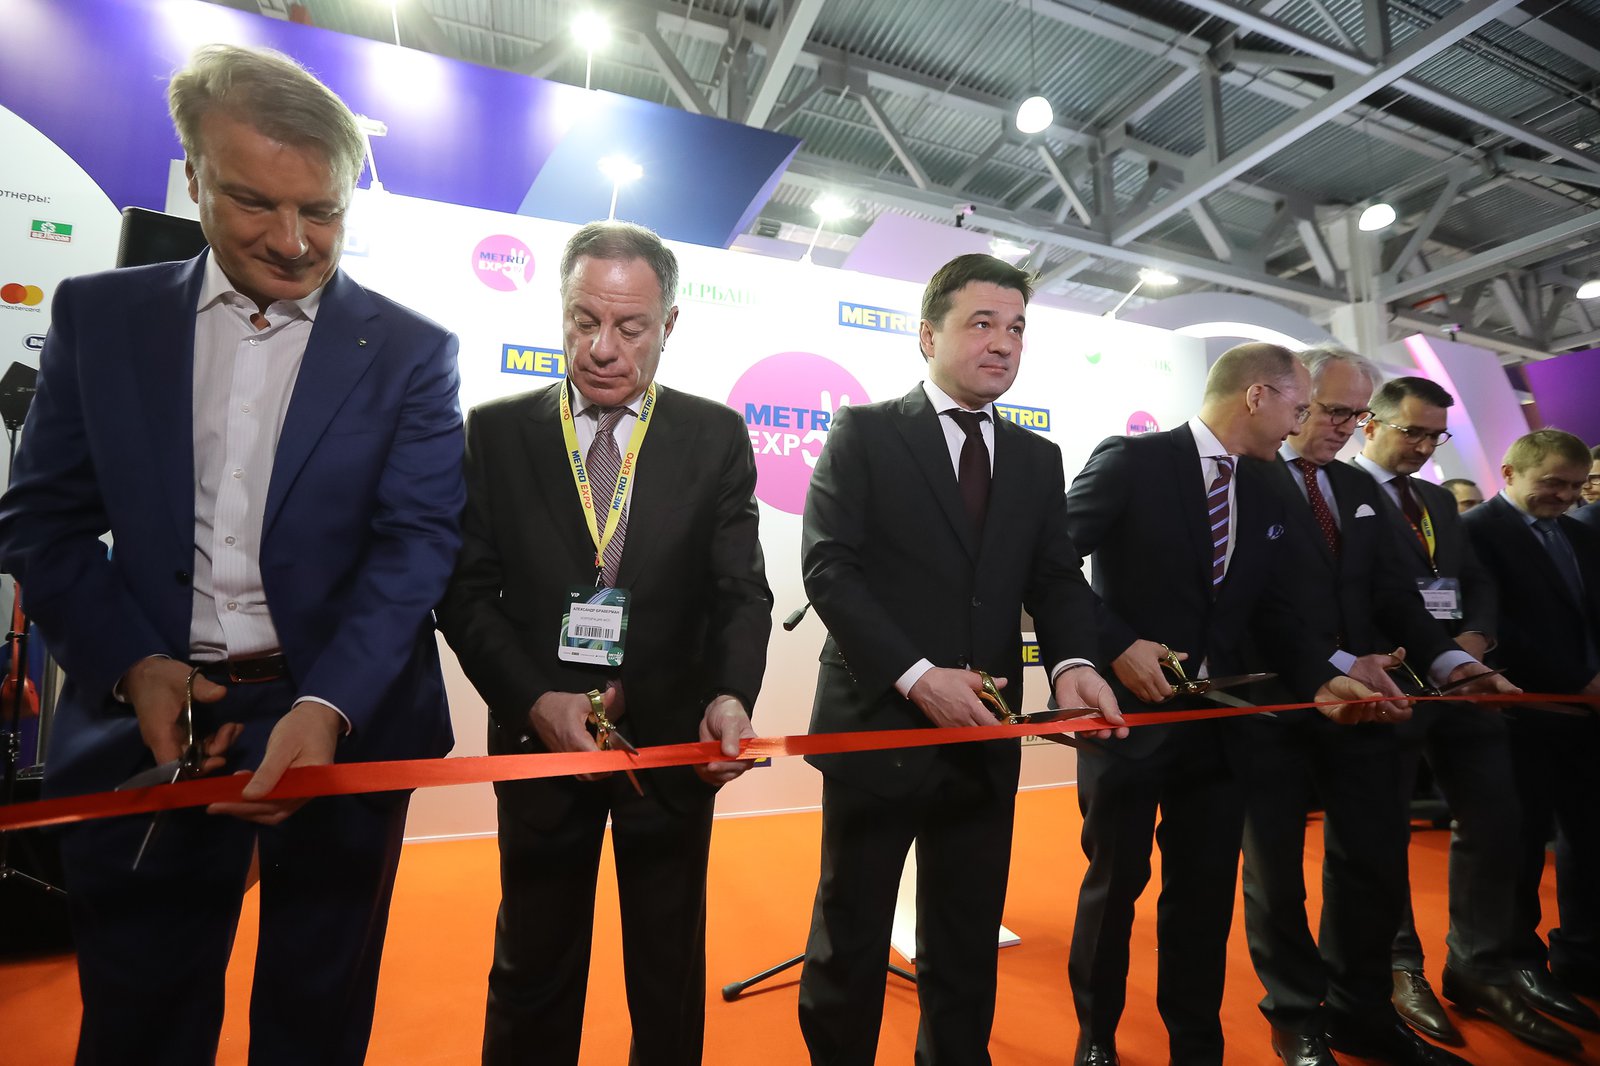 Андрей Воробьев губернатор московской области - METRO EXPO 2019: перспективы и будущее бизнеса в области